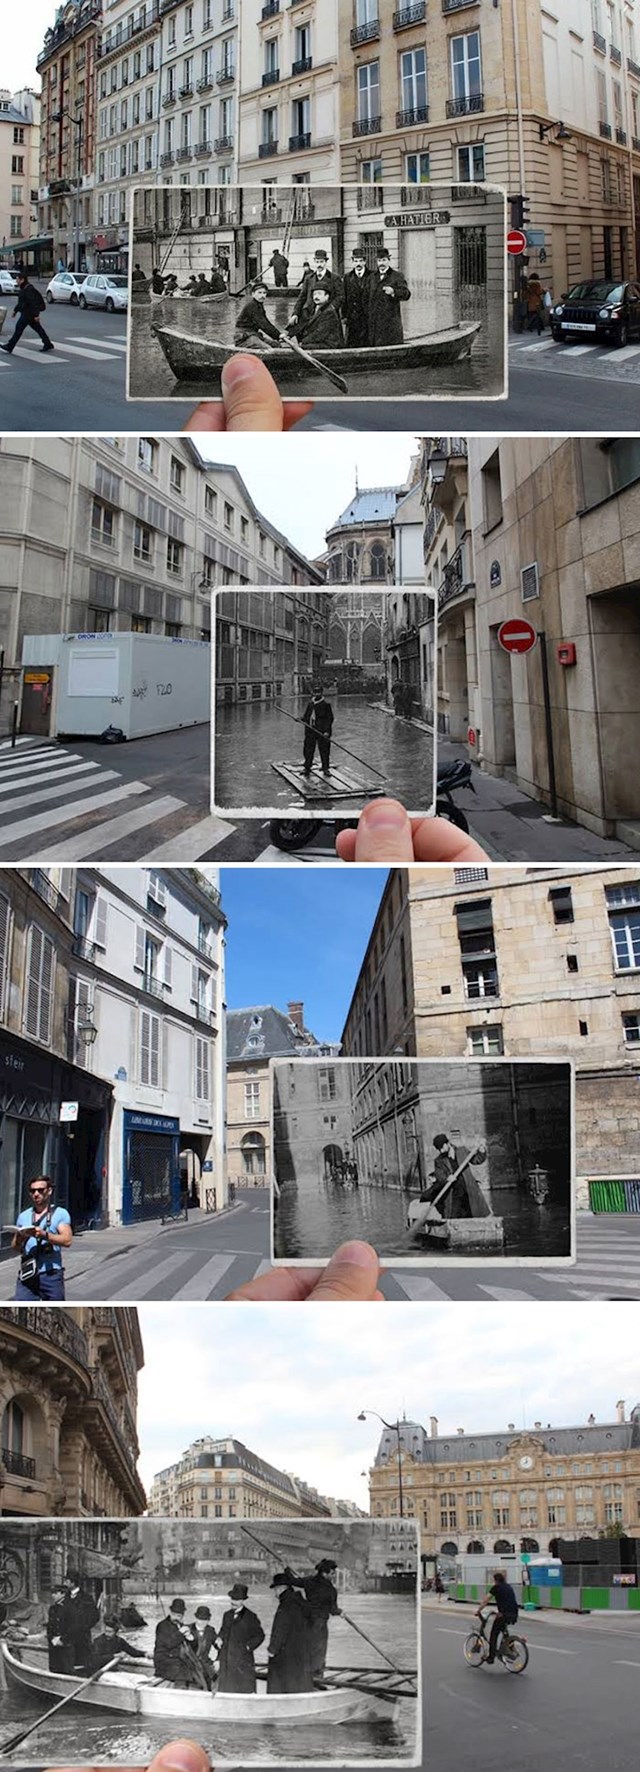 Pariz, fotke iz 1910. i velike poplave te današnje fotke